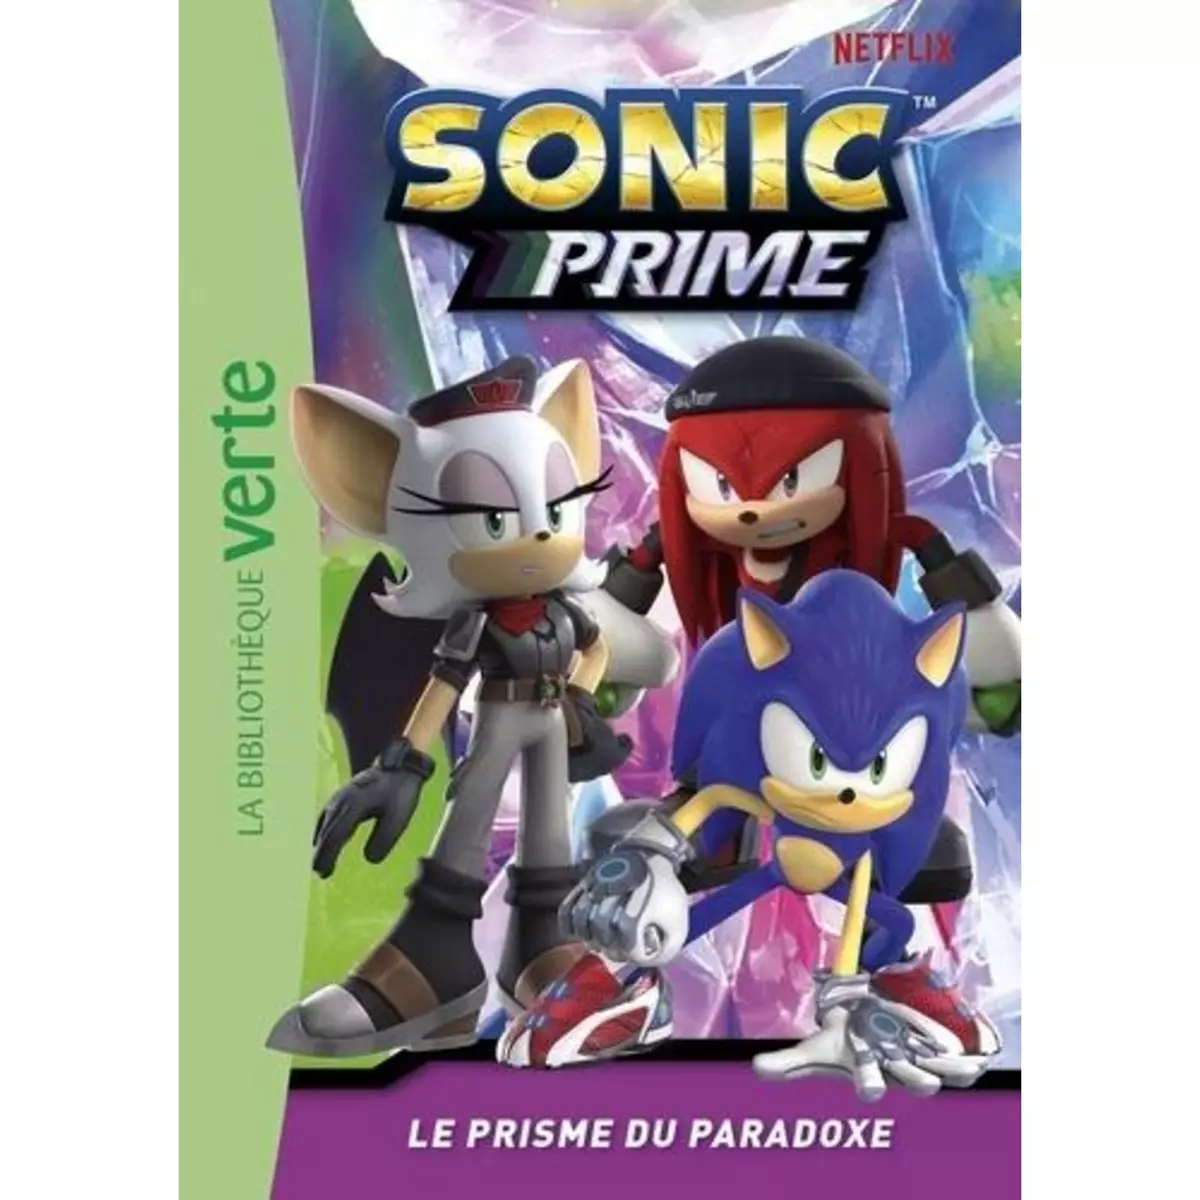  SONIC PRIME TOME 2 : LE PRISME DU PARADOXE, Sega